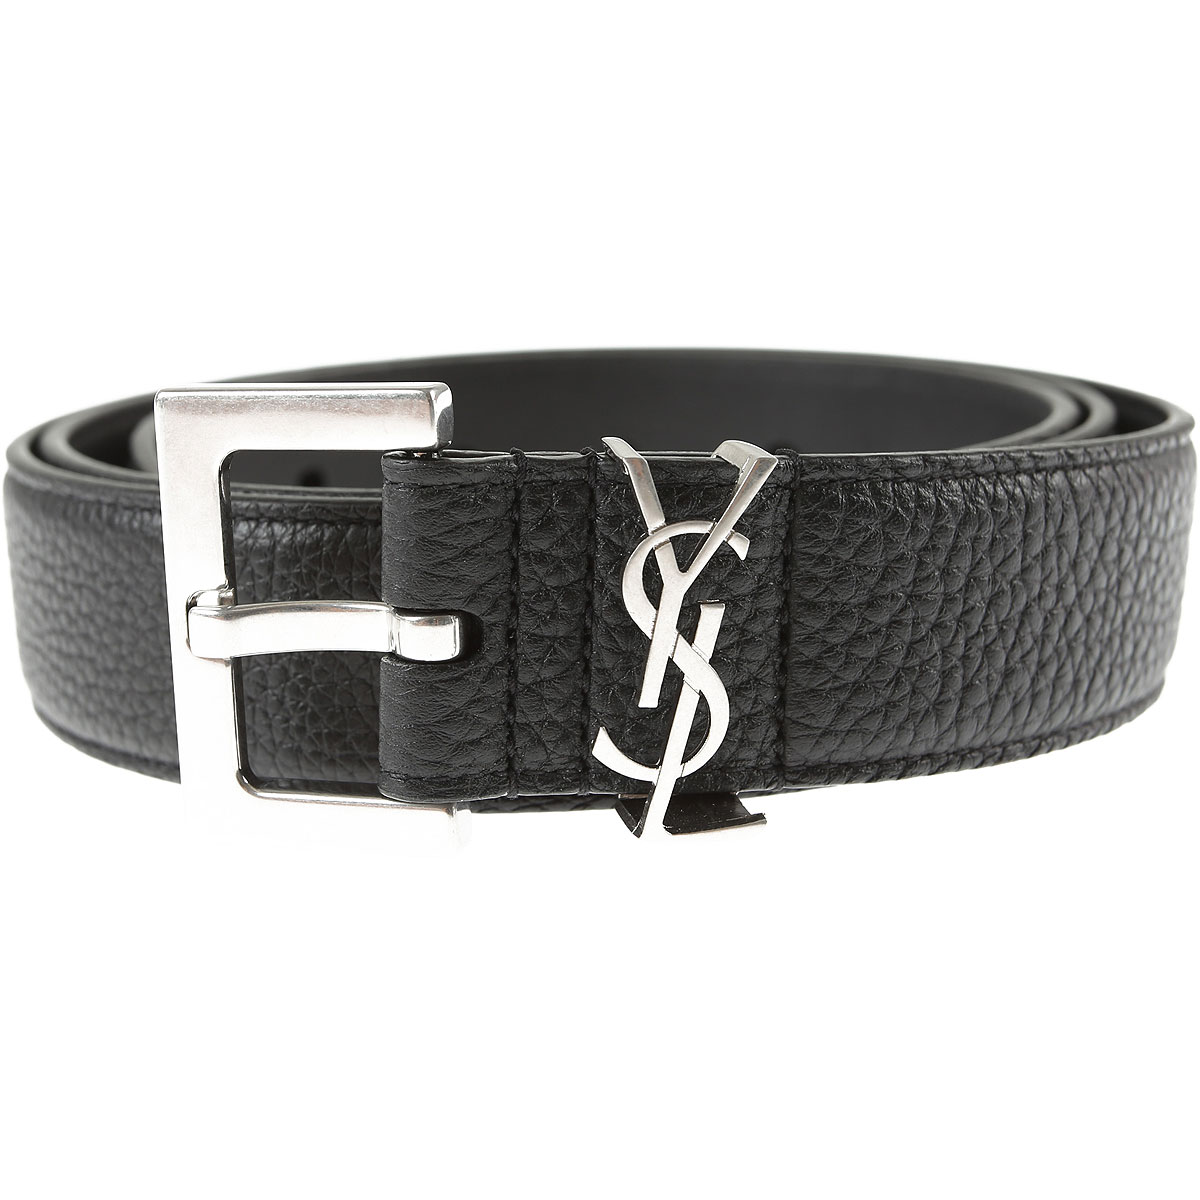 Mens Belts Saint Laurent, Style code: 634440-dt10e-1000